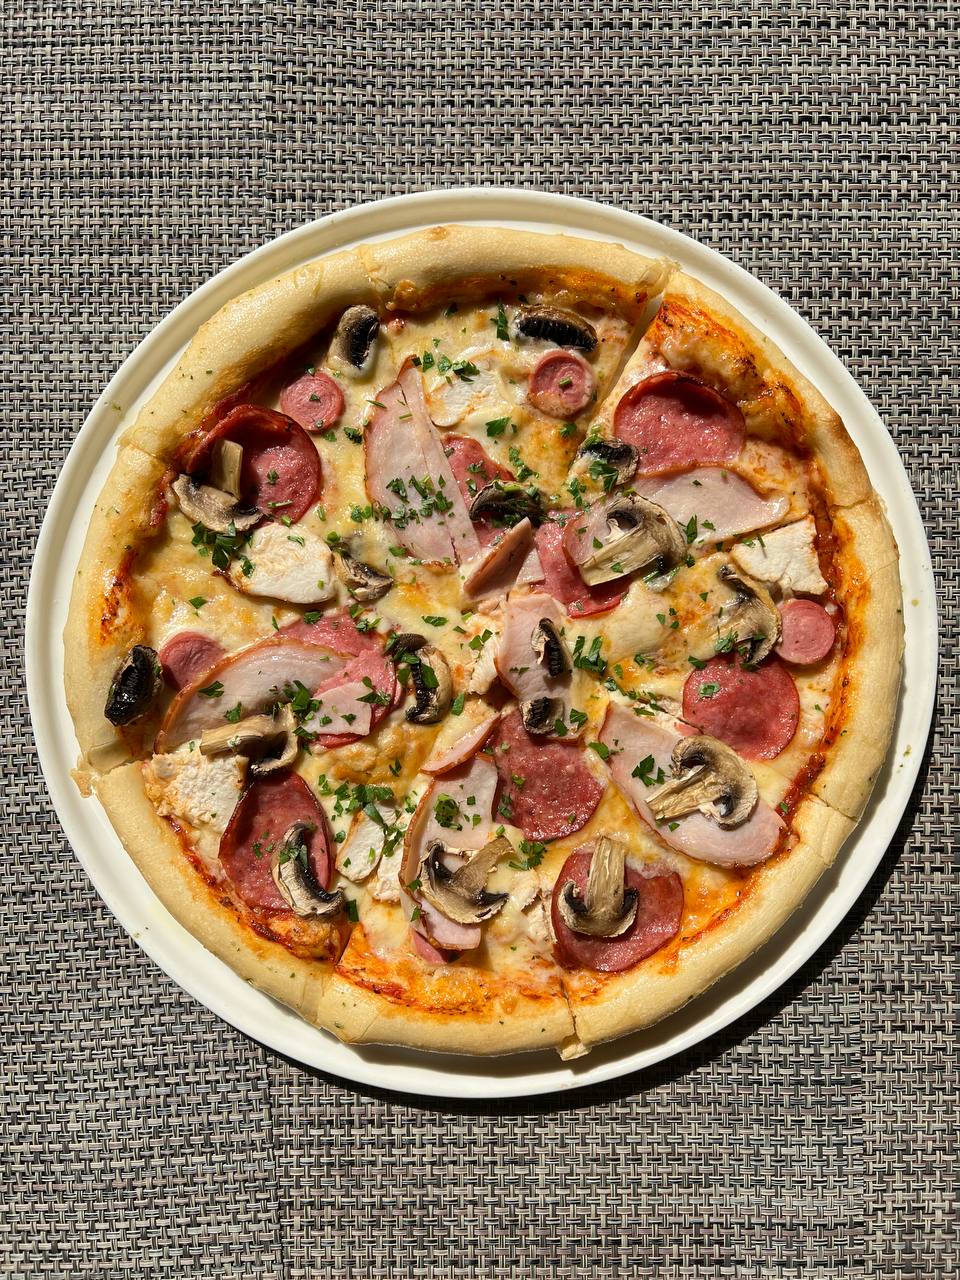 мясная пицца рецепт в домашних условиях духовке пошаговый фото 77